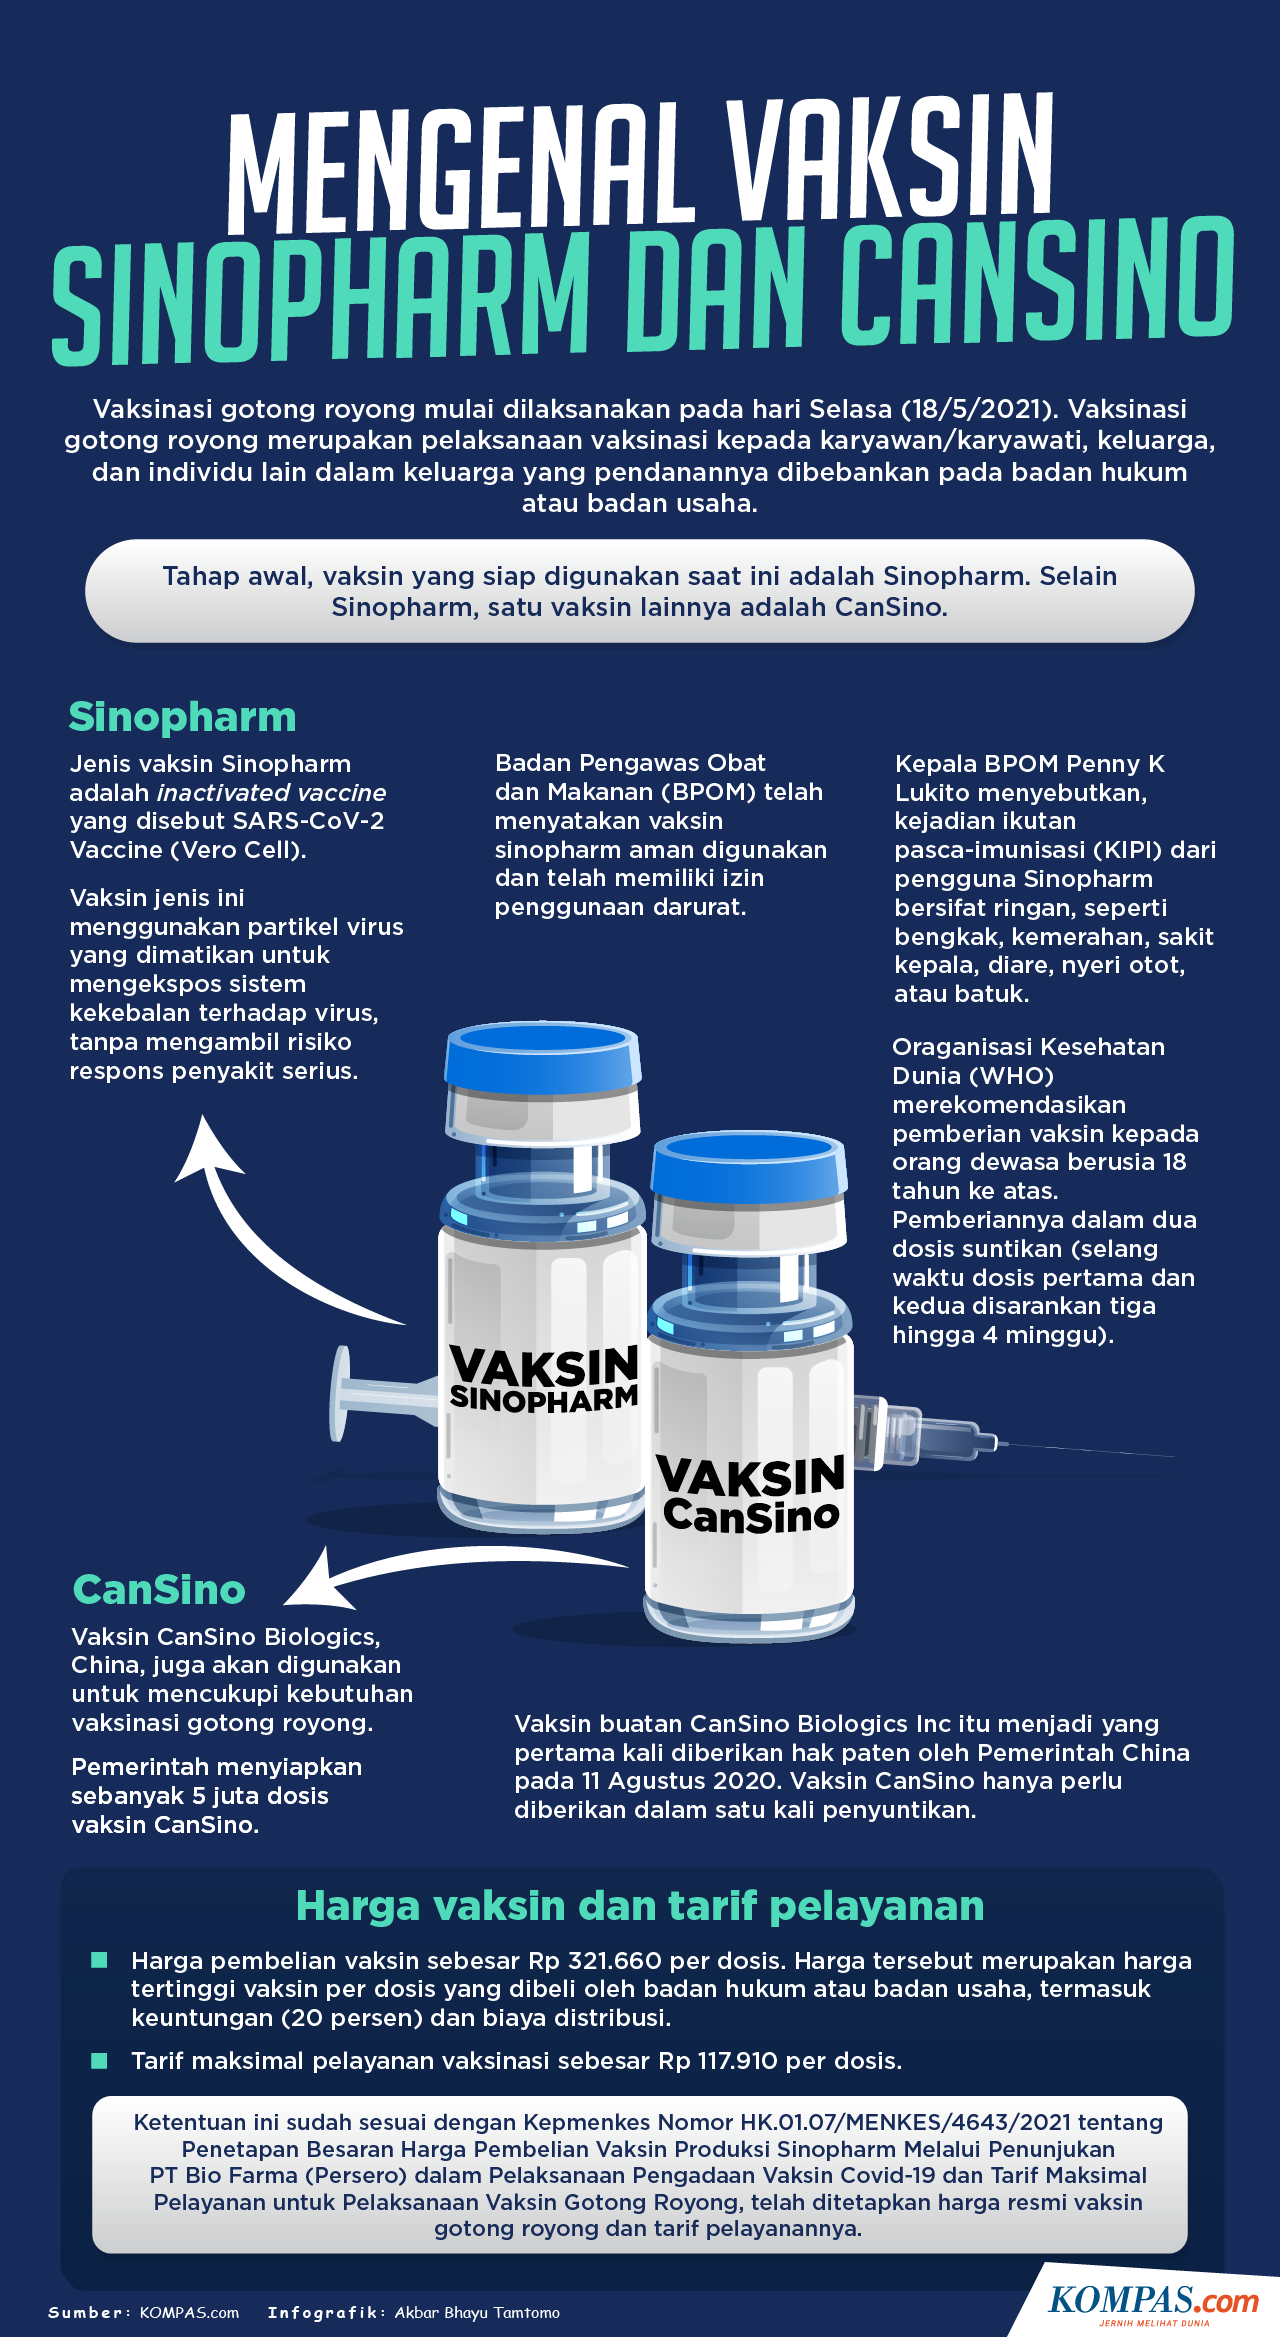 Mana dari vaksin cansino 10 Vaksin